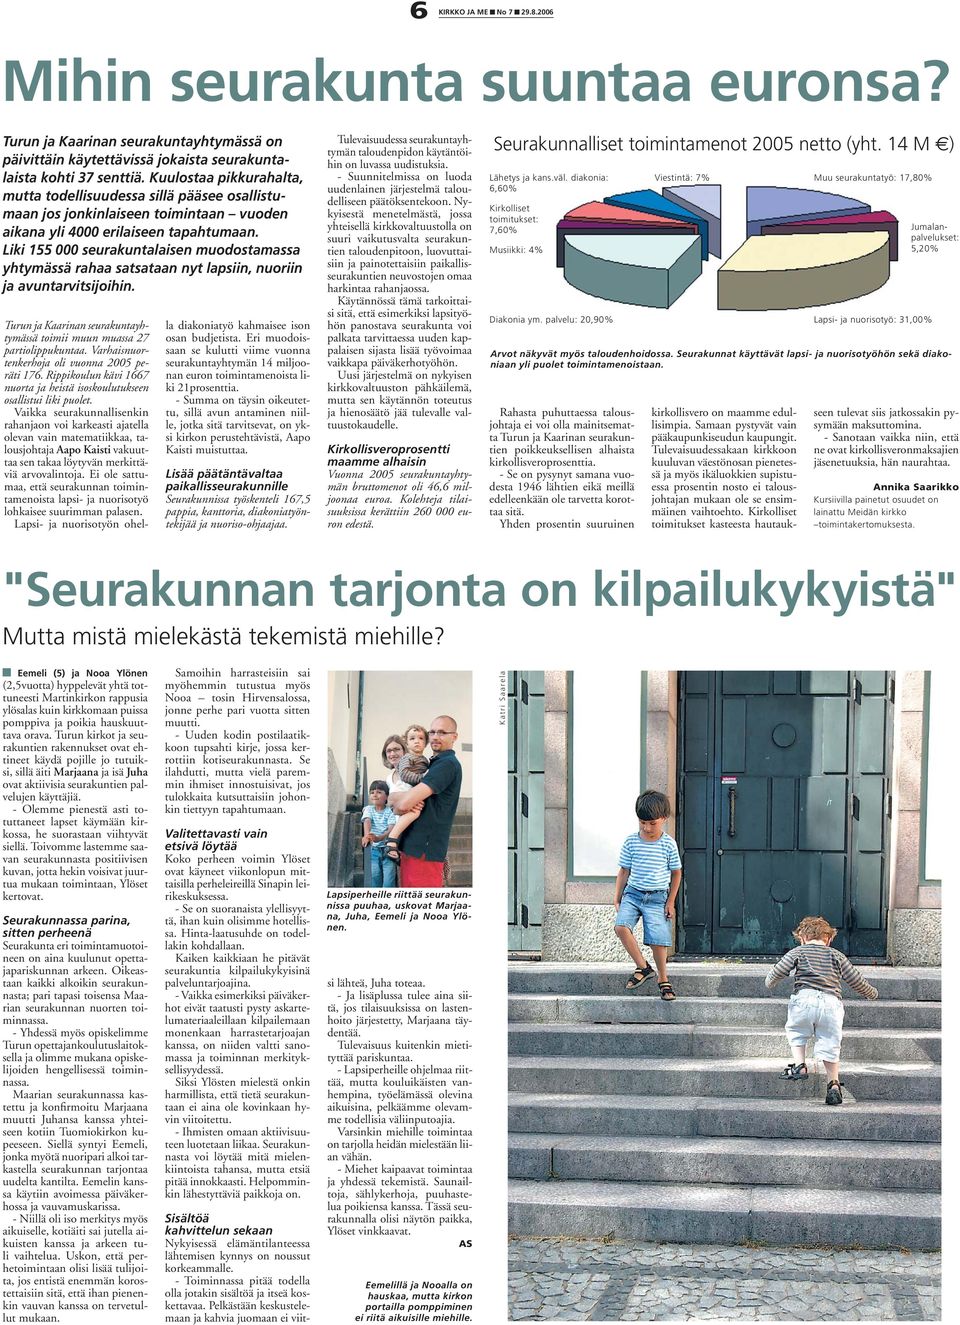 Liki 155 000 seurakuntalaisen muodostamassa yhtymässä rahaa satsataan nyt lapsiin, nuoriin ja avuntarvitsijoihin. Turun ja Kaarinan seurakuntayhtymässä toimii muun muassa 27 partiolippukuntaa.